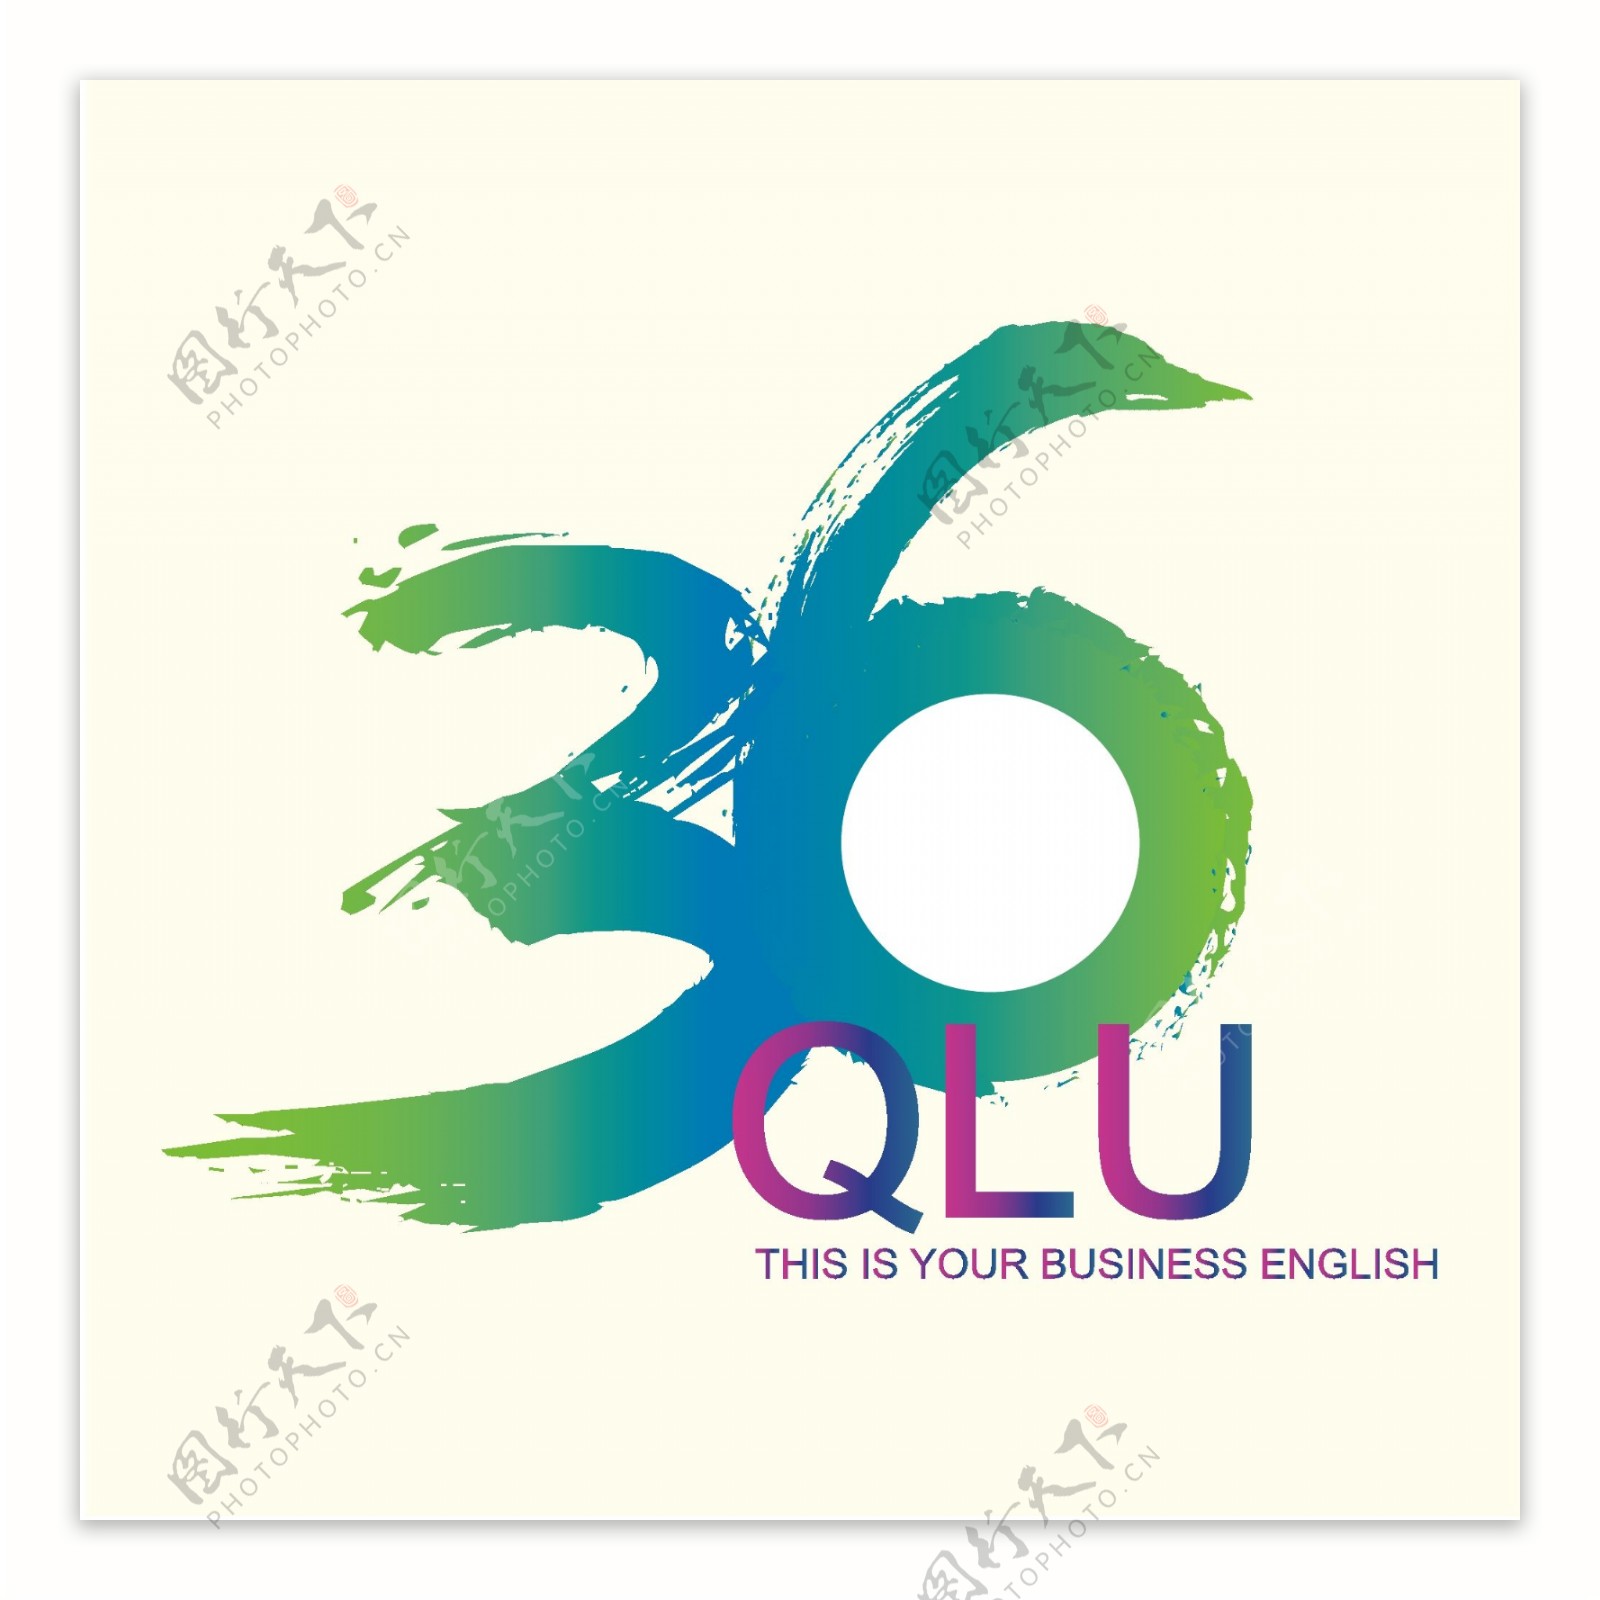 36周年庆logo图片